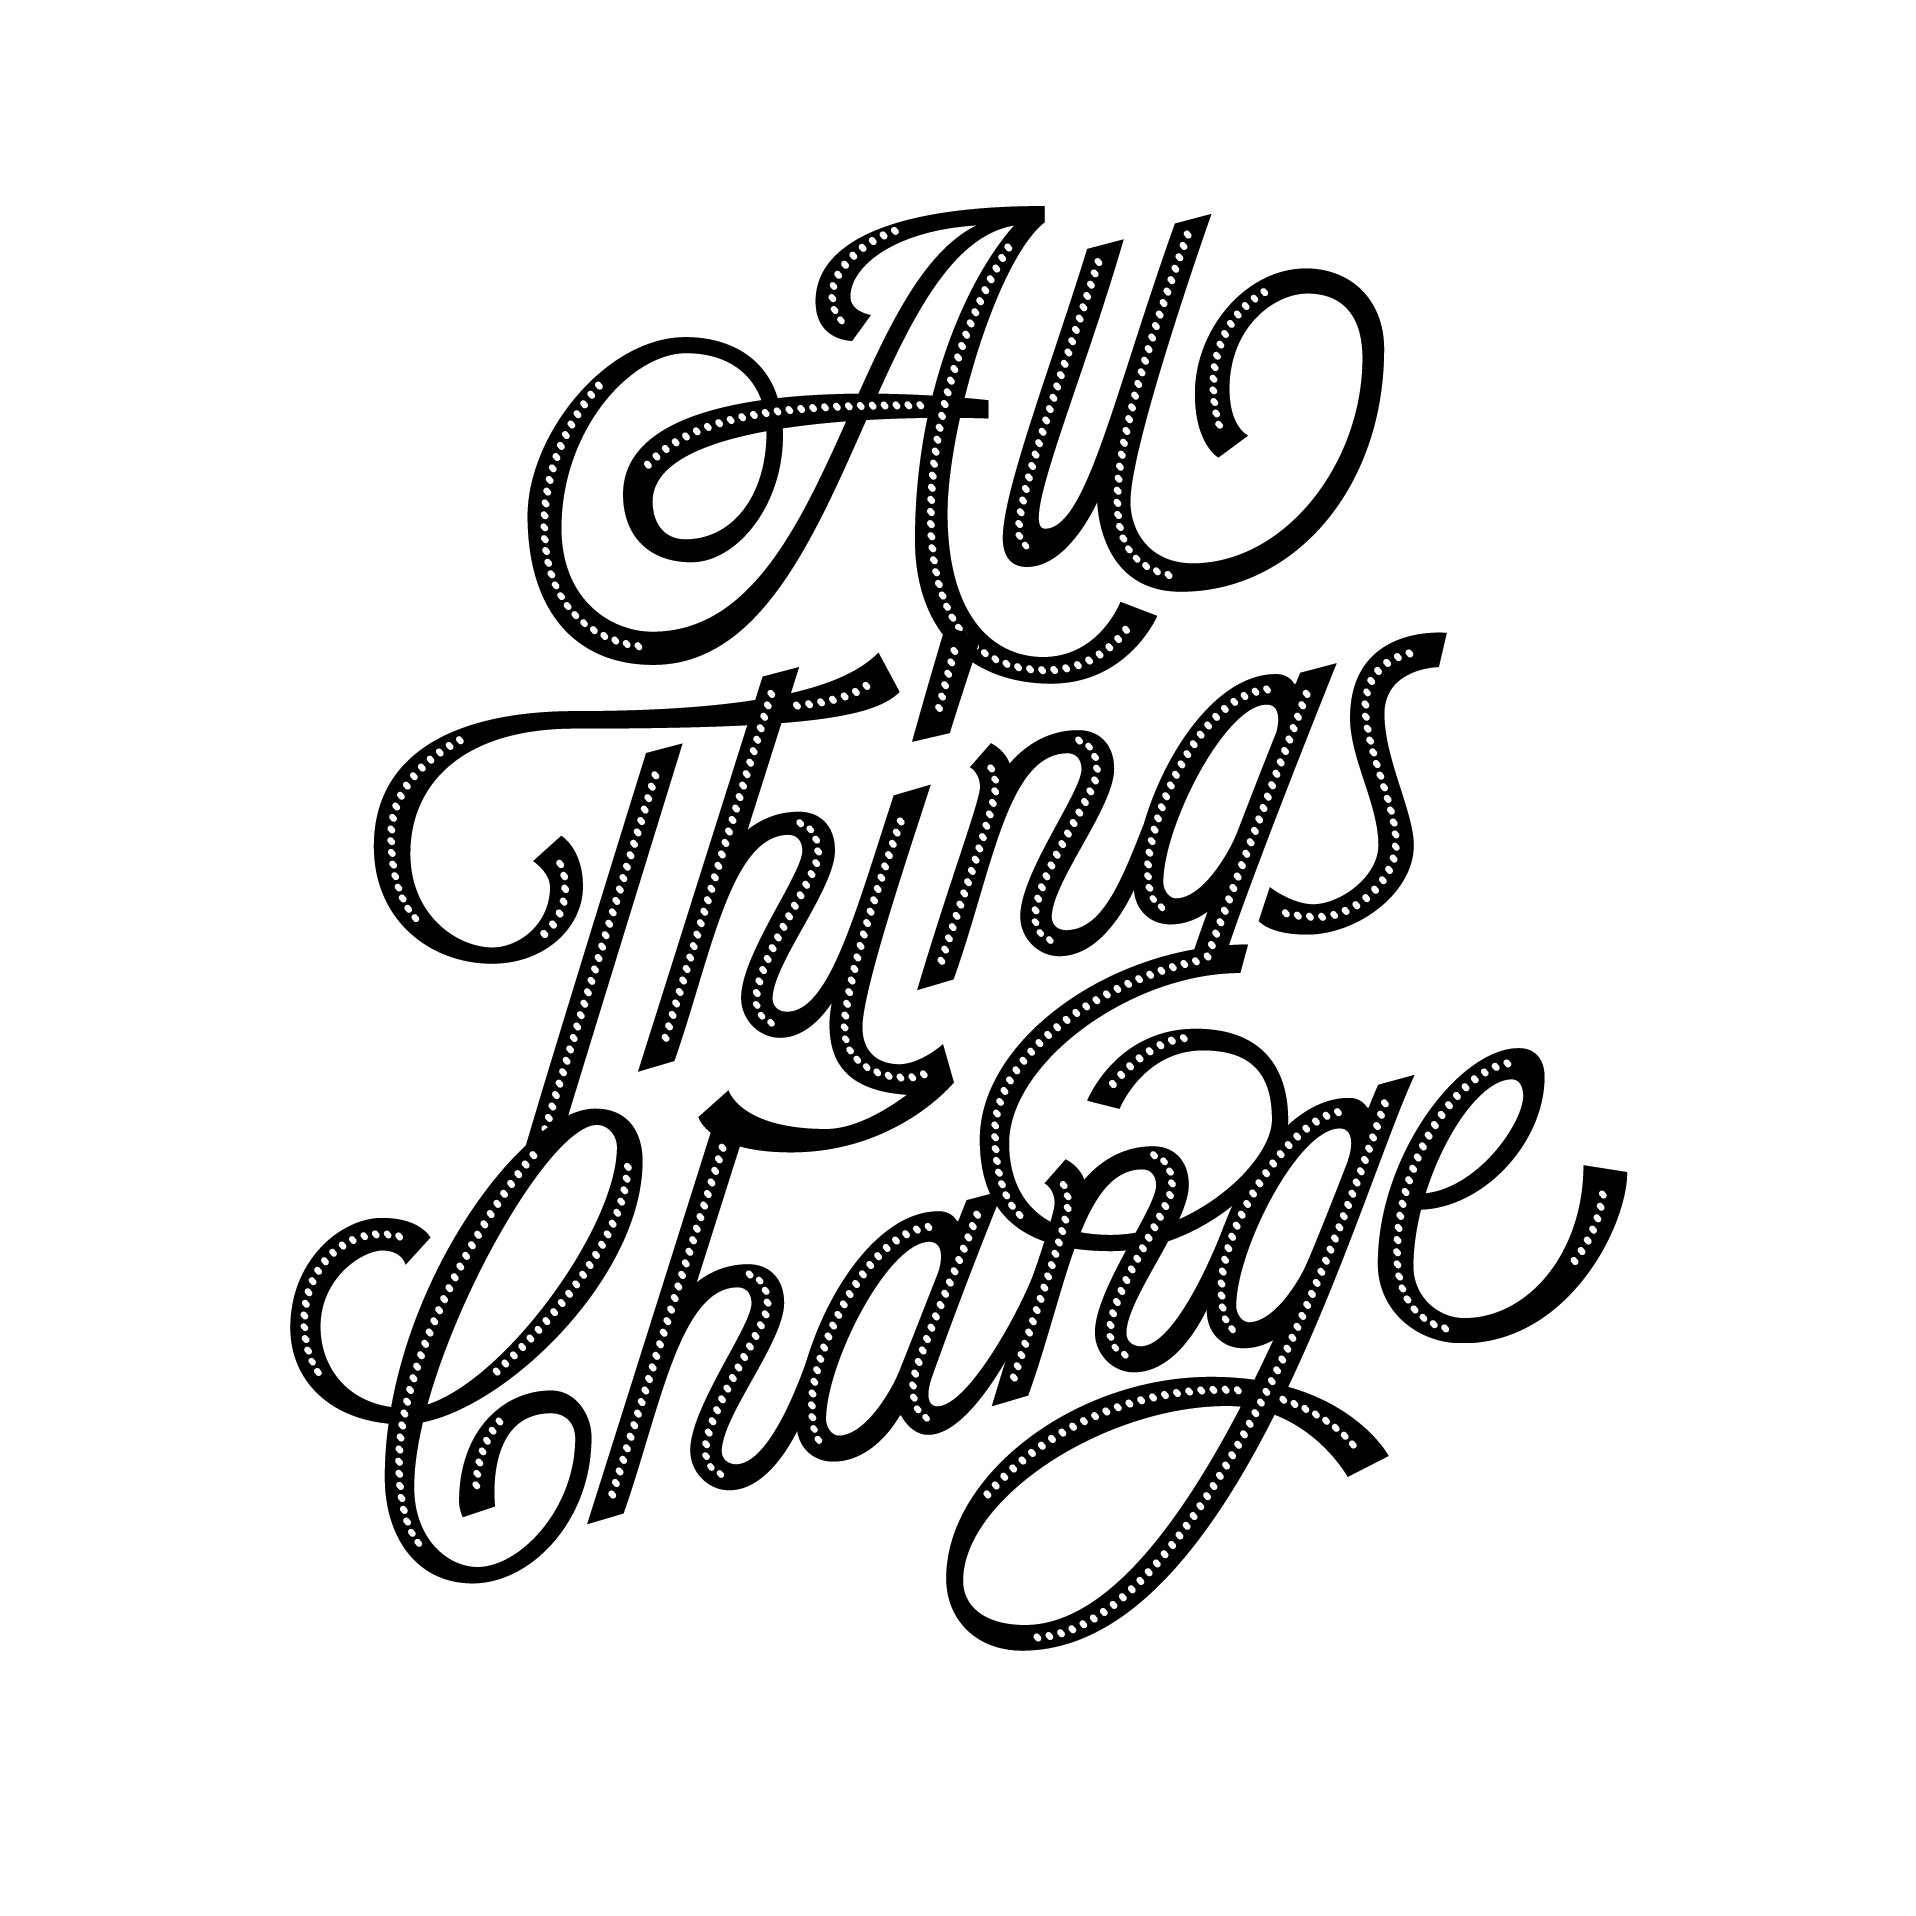 Ein Schriftzug (schwarz auf weiß) mit dem englischen Wortlaut: All things change (Alle Dinge verändern sich).